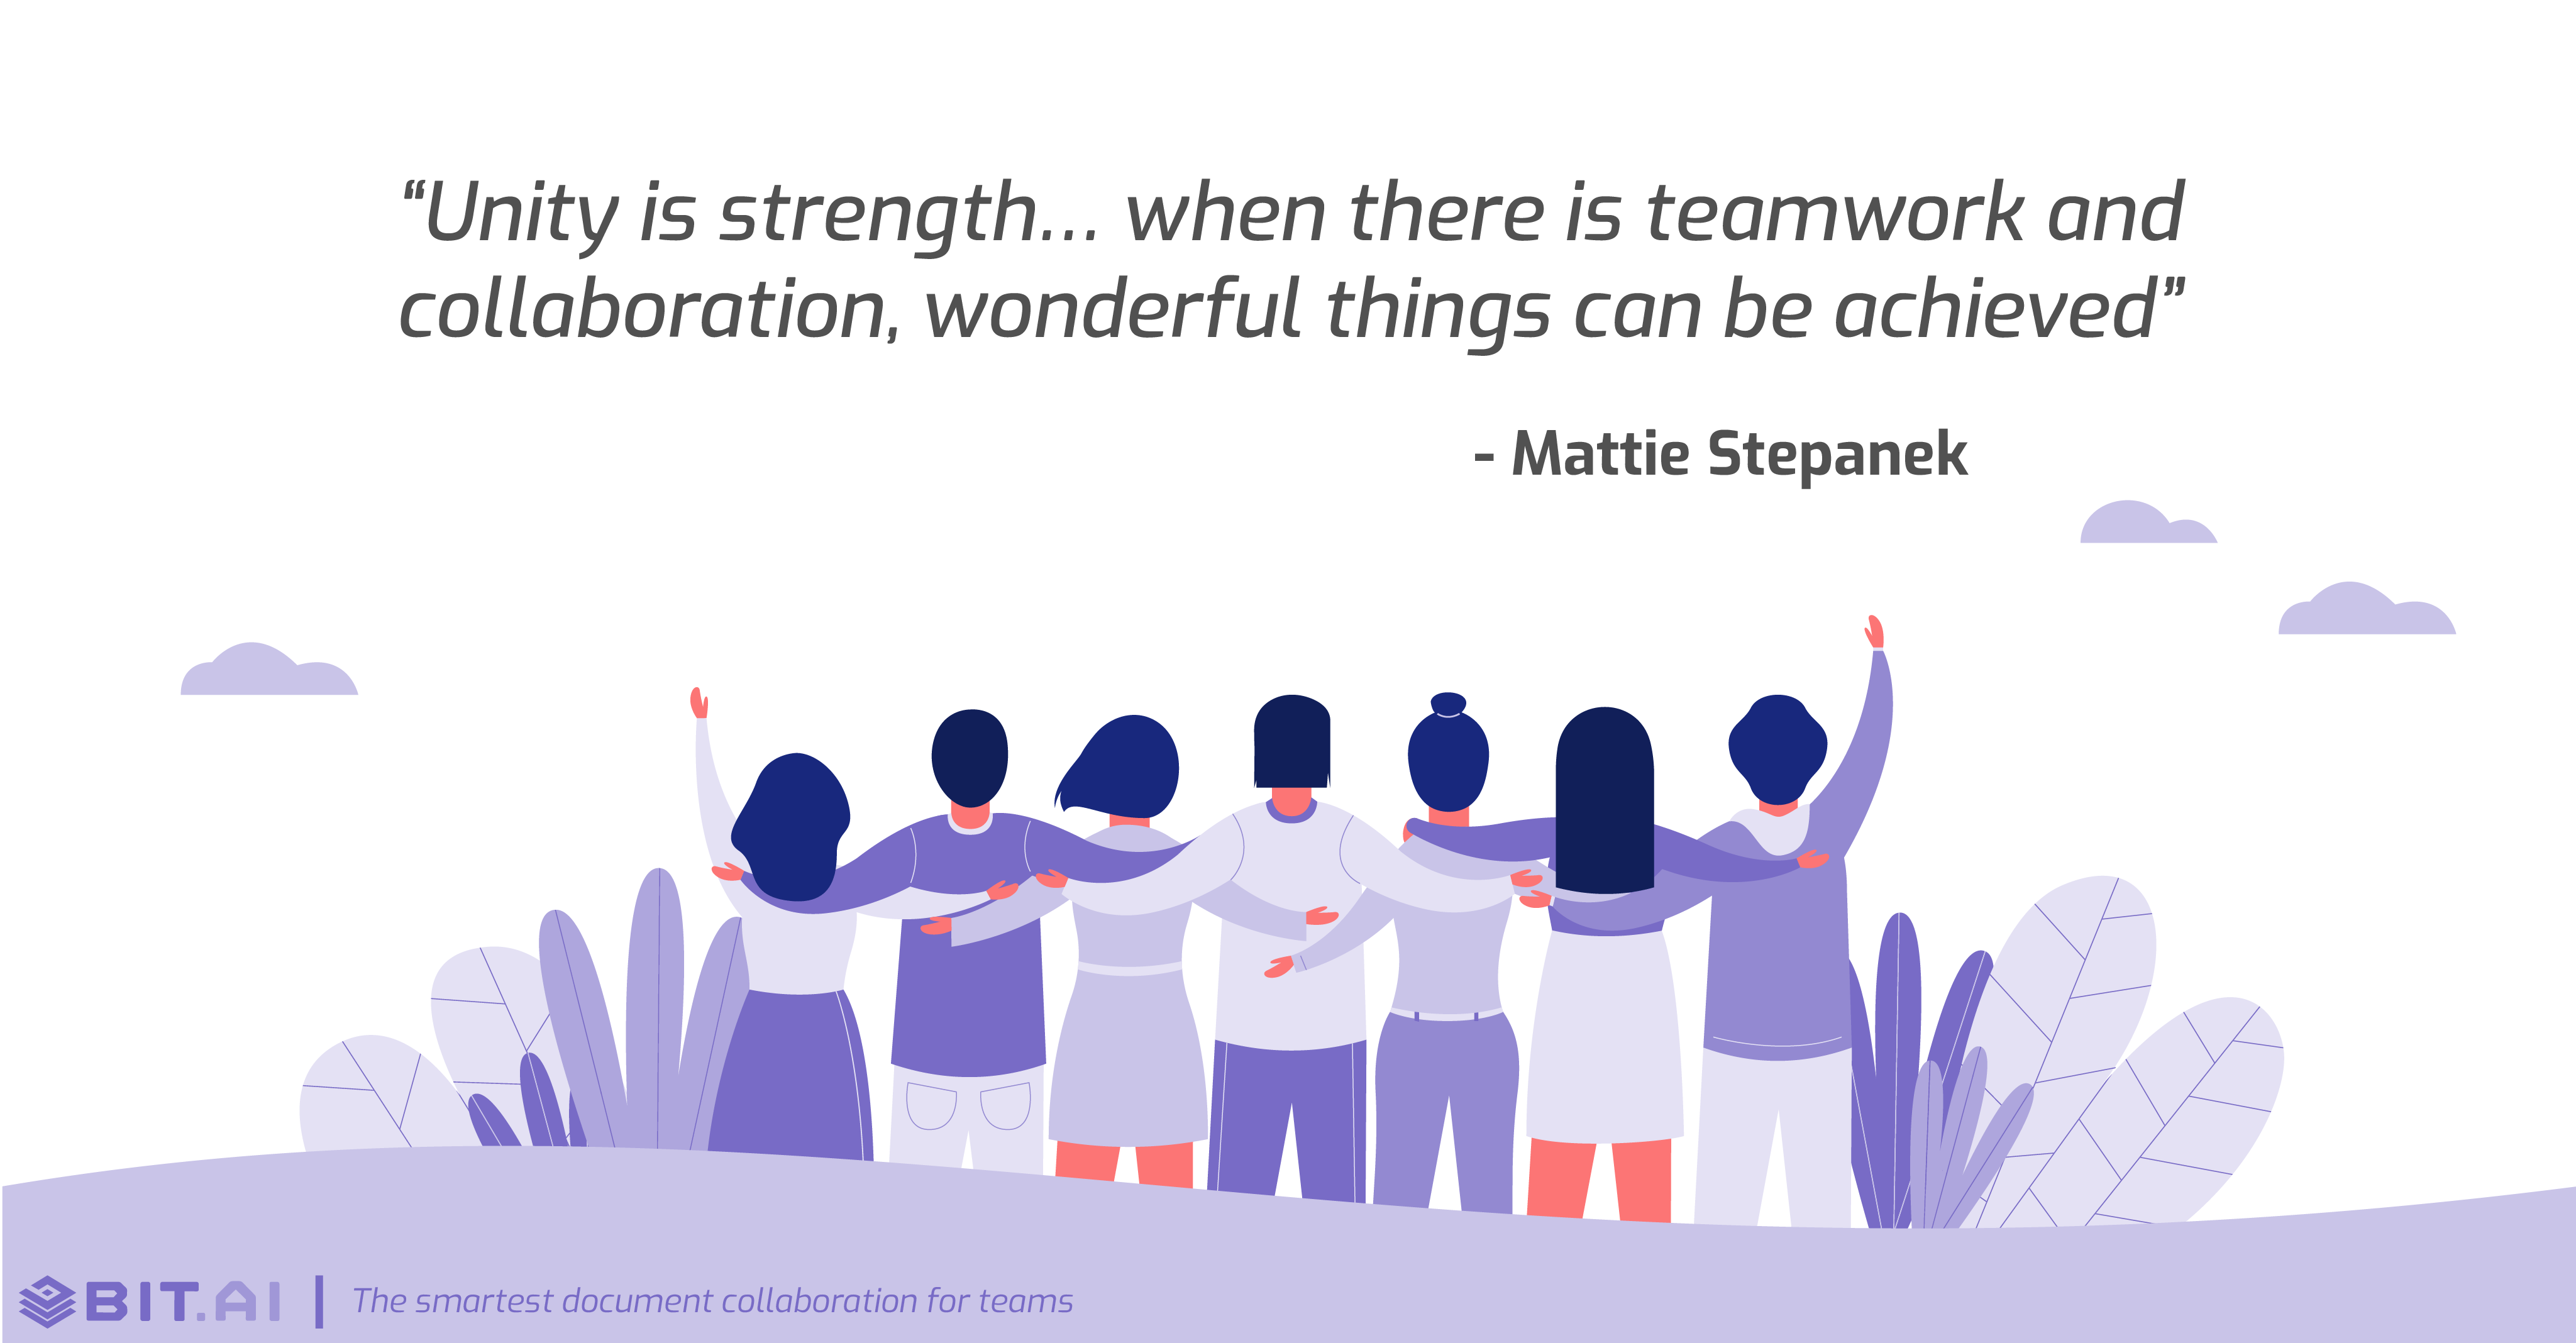 Teamwork collaboration quote by Mattie Stepanek